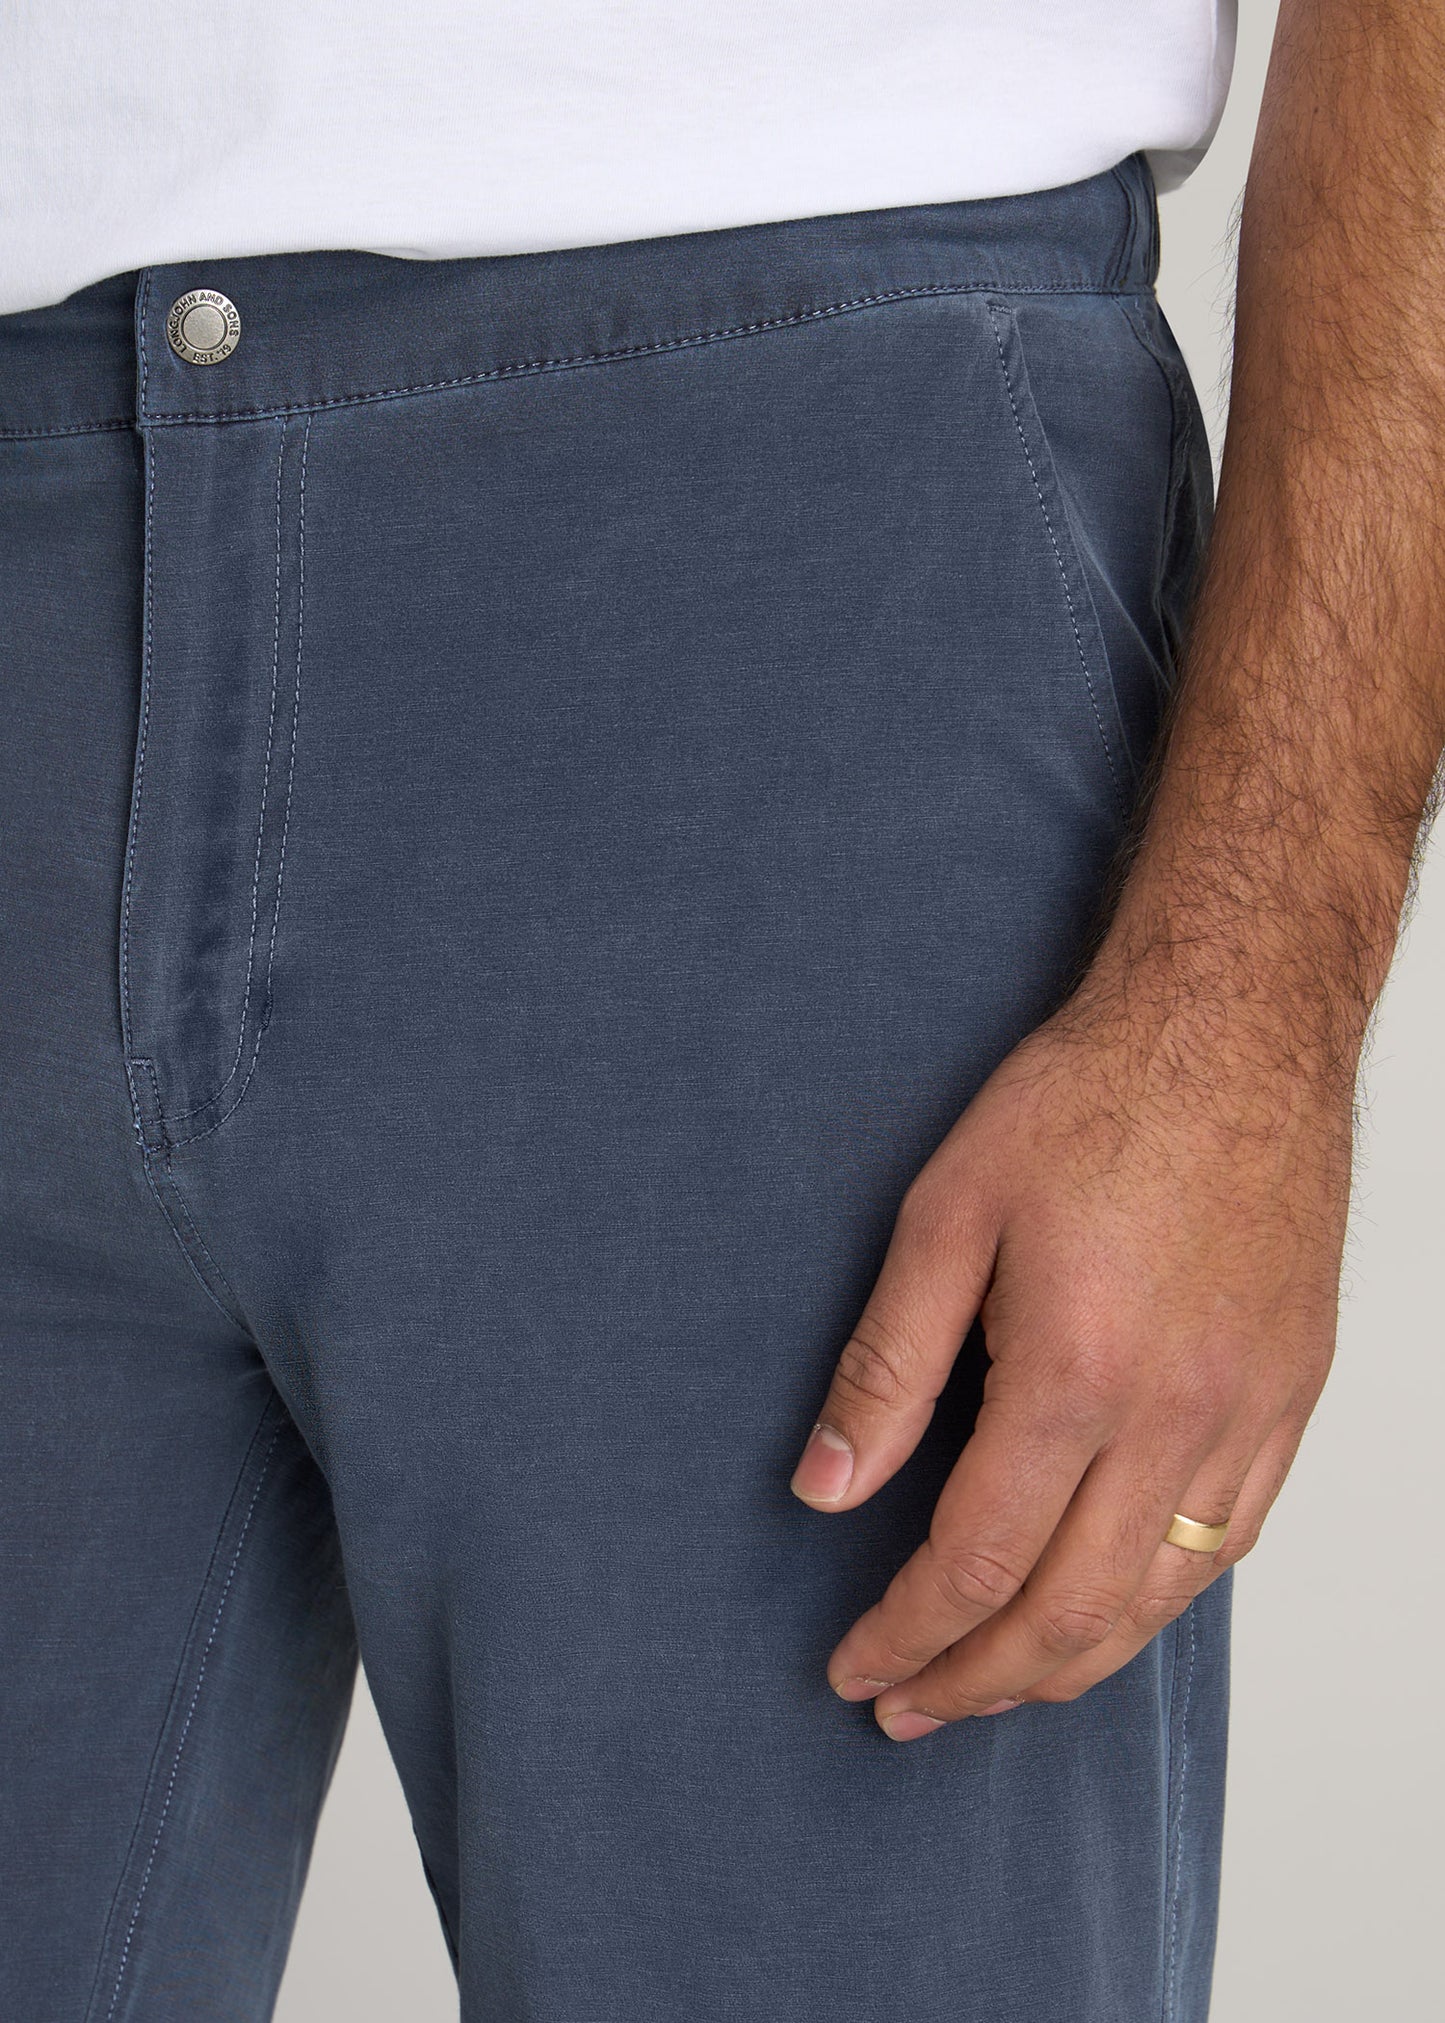 American-Tall-Men-LJ-Deck-Shorts-Vintage-Midnight-Navy-detail